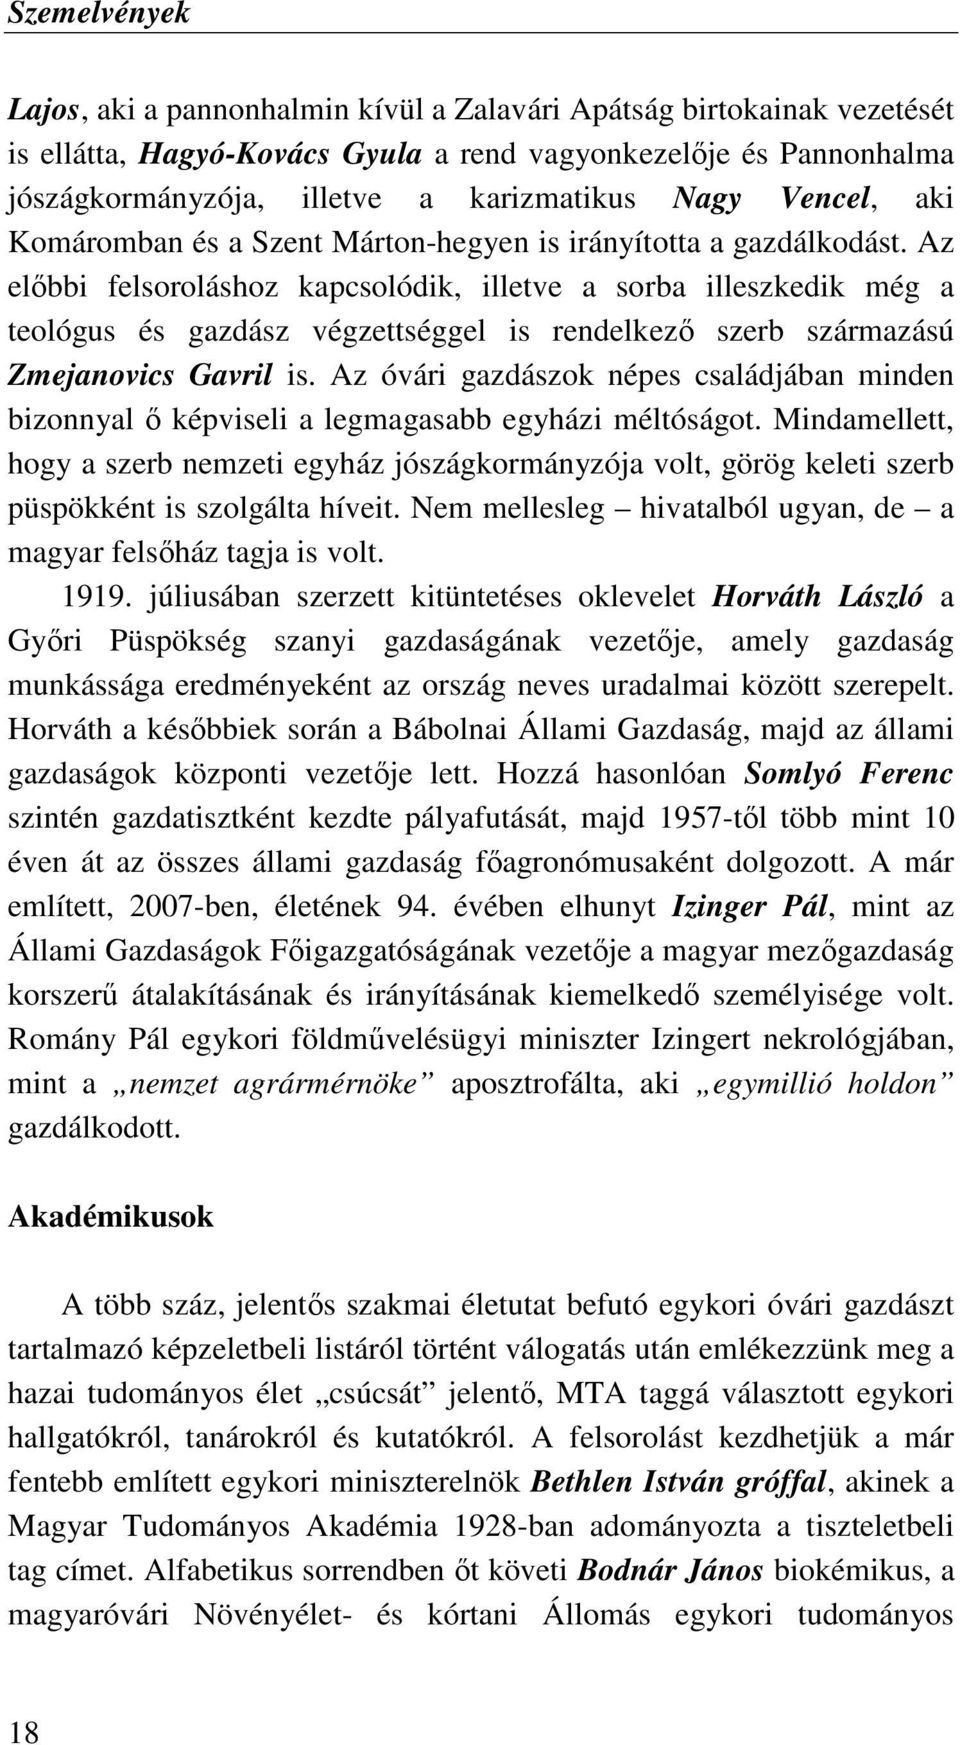 Az elıbbi felsoroláshoz kapcsolódik, illetve a sorba illeszkedik még a teológus és gazdász végzettséggel is rendelkezı szerb származású Zmejanovics Gavril is.